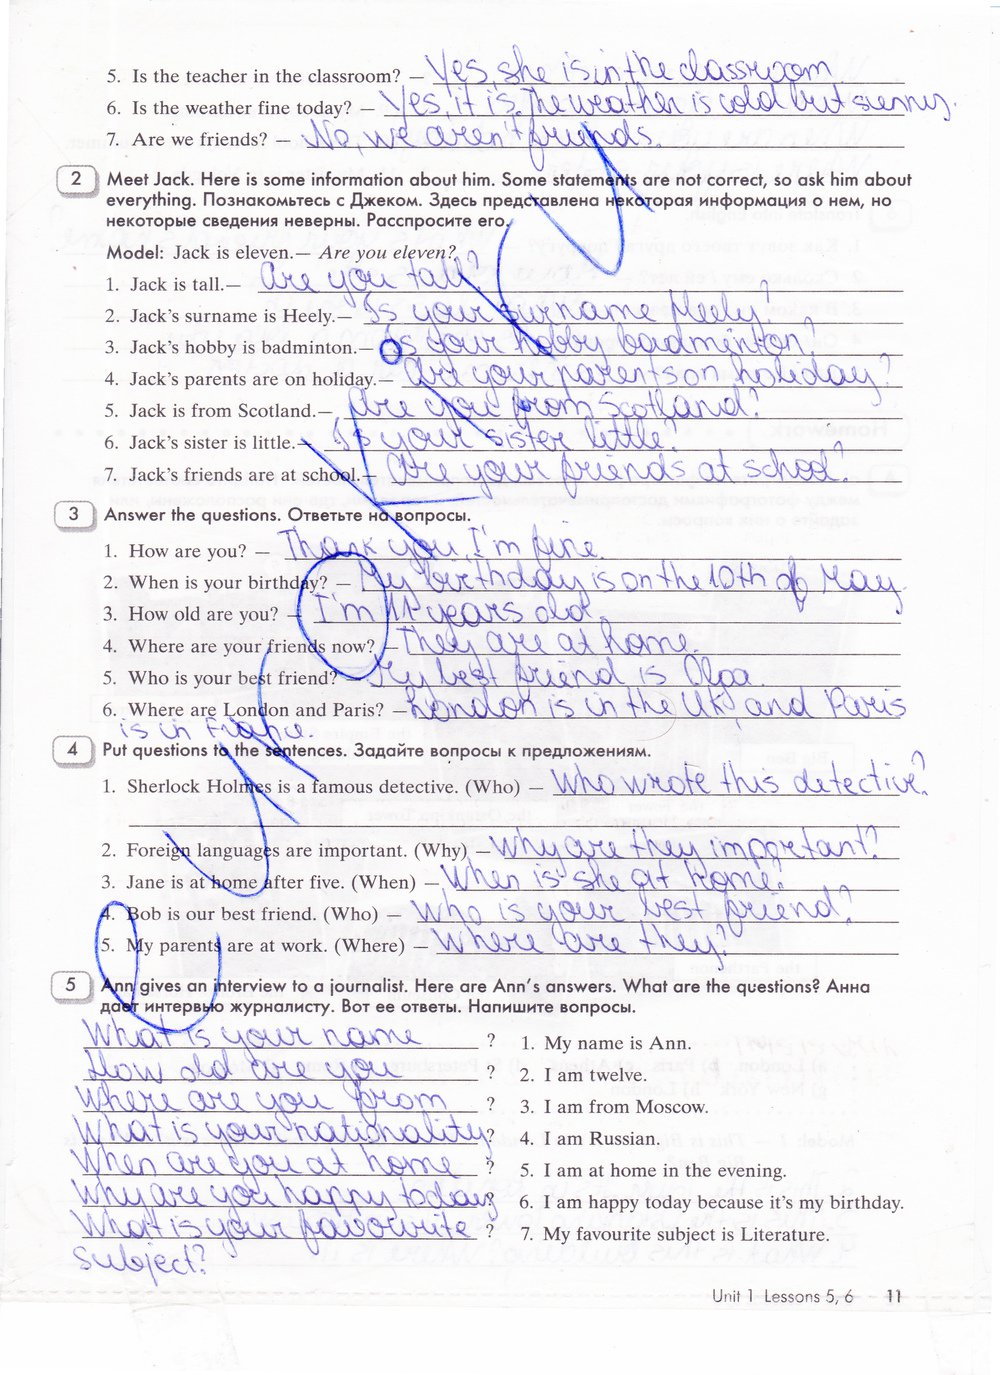 гдз 5 класс рабочая тетрадь часть 1 страница 11 английский язык Кауфман